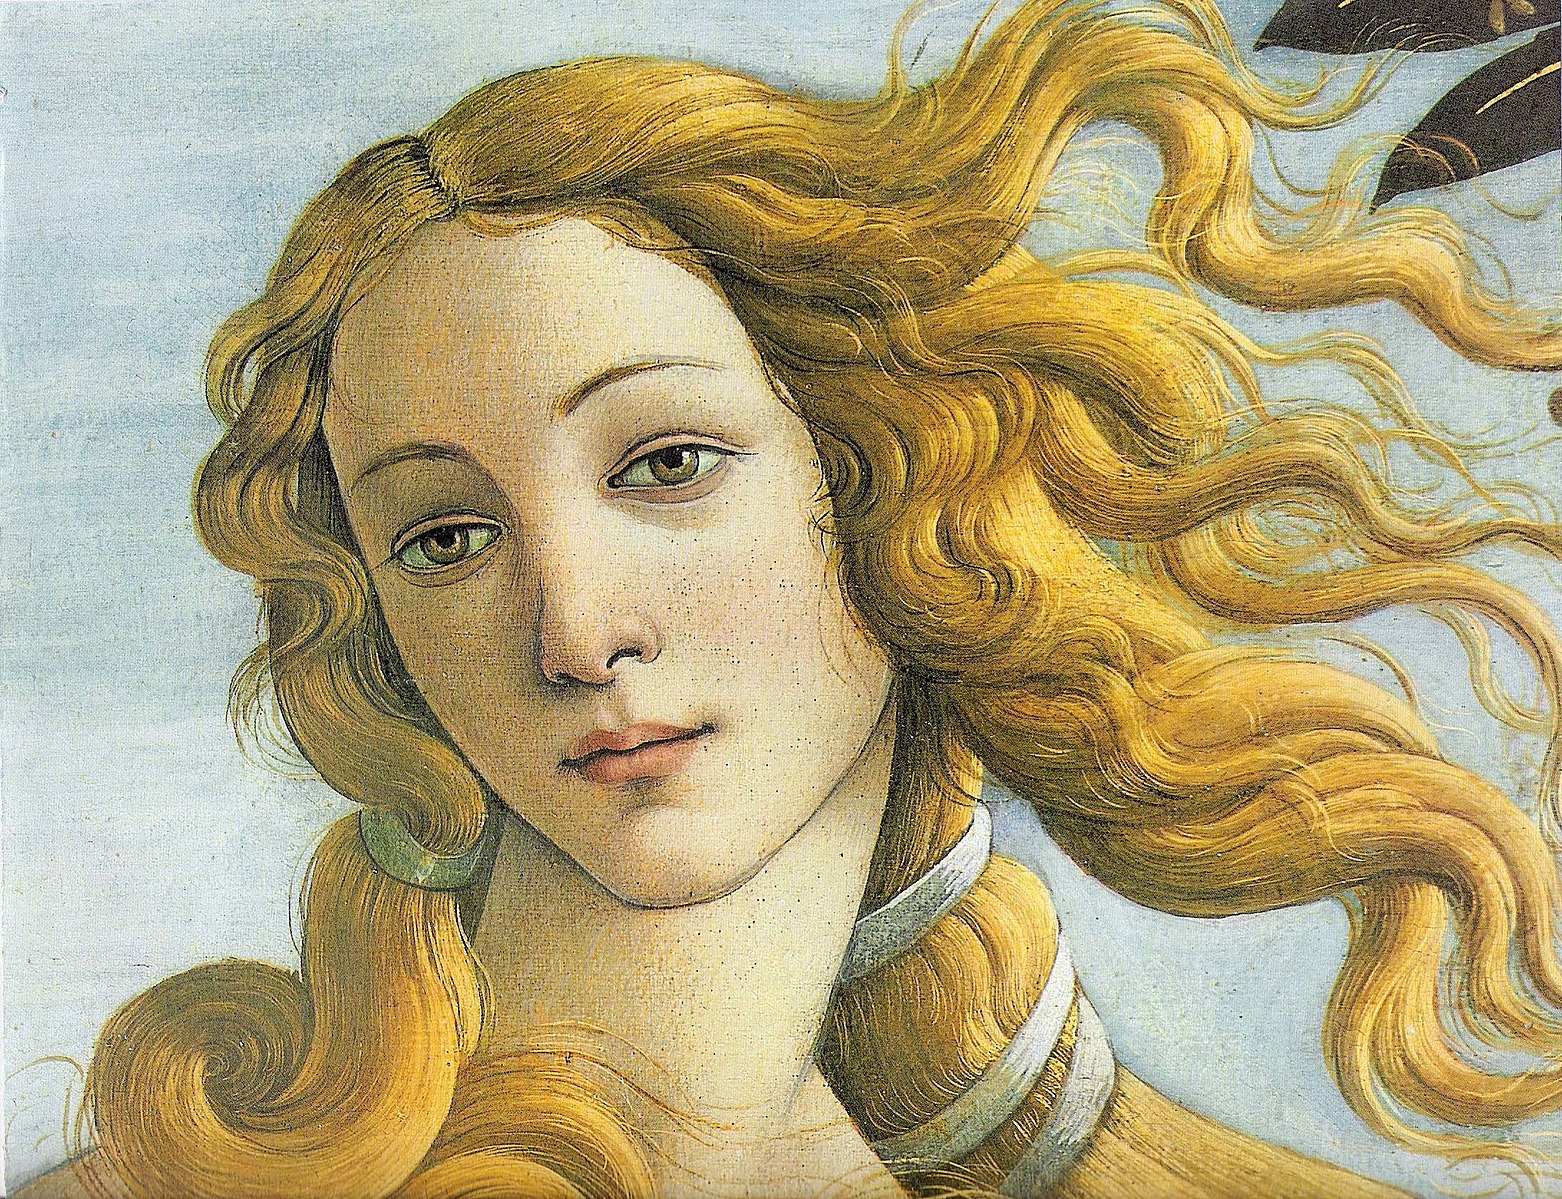 Public domain photograph of Botticelli's *Birth of Venus* painting. 
Sandro Botticelli, Public domain, via Wikimedia Commons license.
Sandro Botticelli, The Birth of Venus (c. 1484–1486). Tempera on canvas. 172.5 cm × 278.9 cm (67.9 in × 109.6 in). Uffizi, Florence